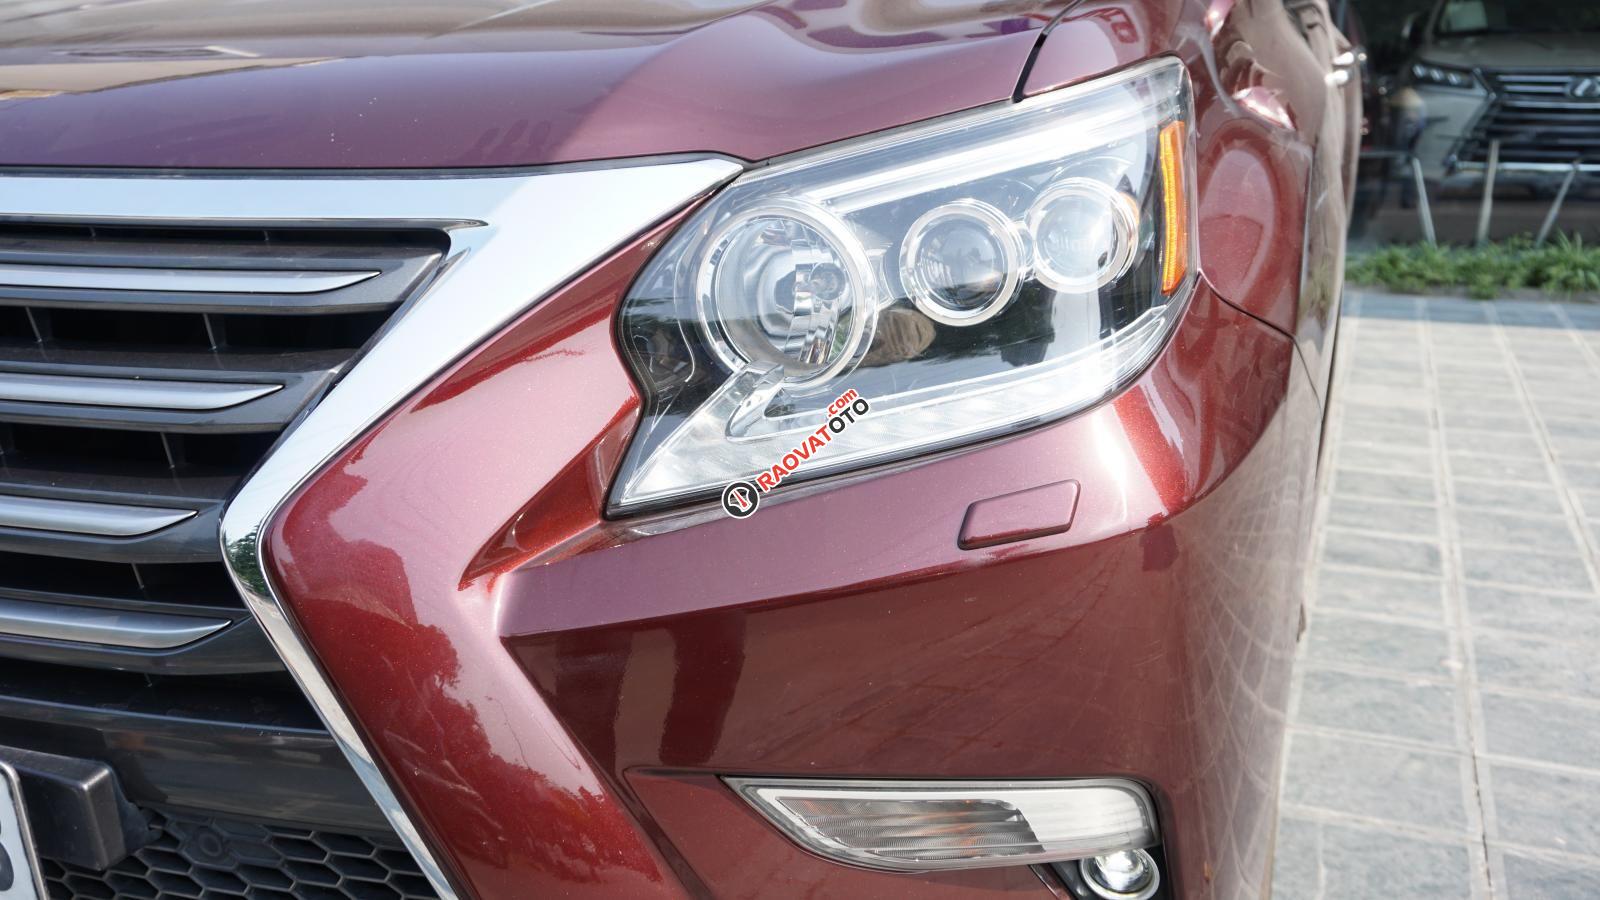 Bán Lexus GX460 đời 2016 màu đỏ Rubi, xe chính hãng, Mr Huân 0981.0101.61-9